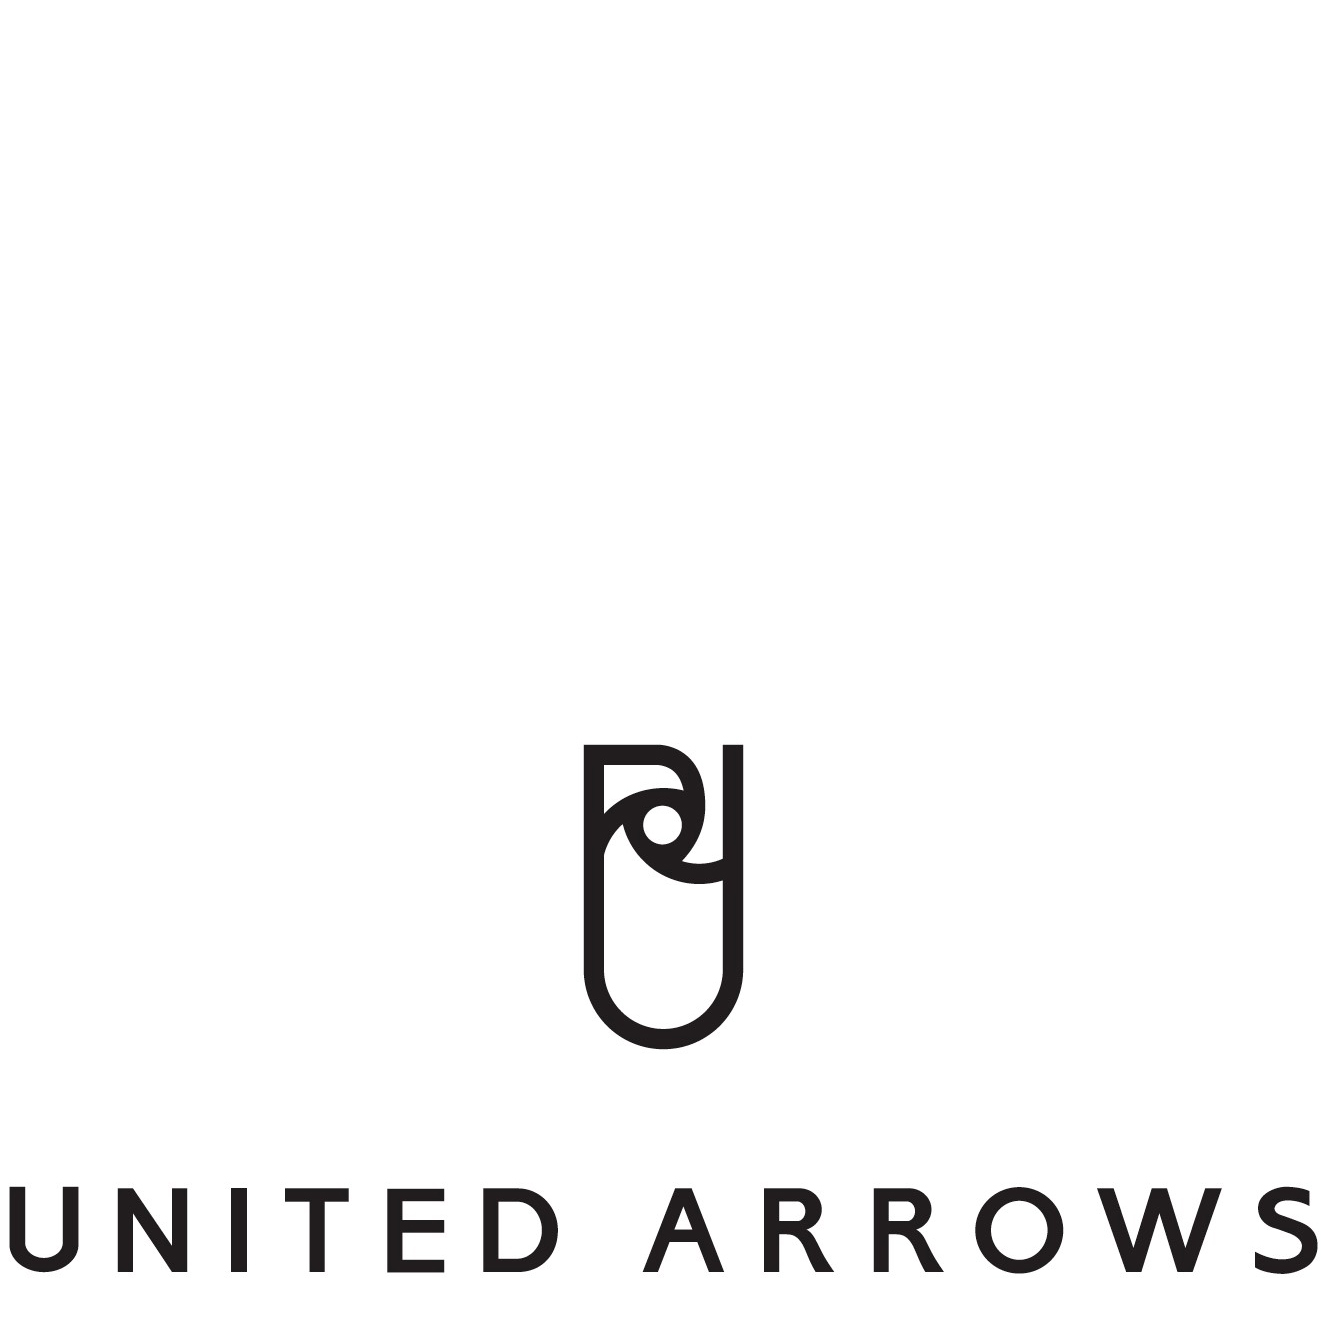 Logo United Arrows